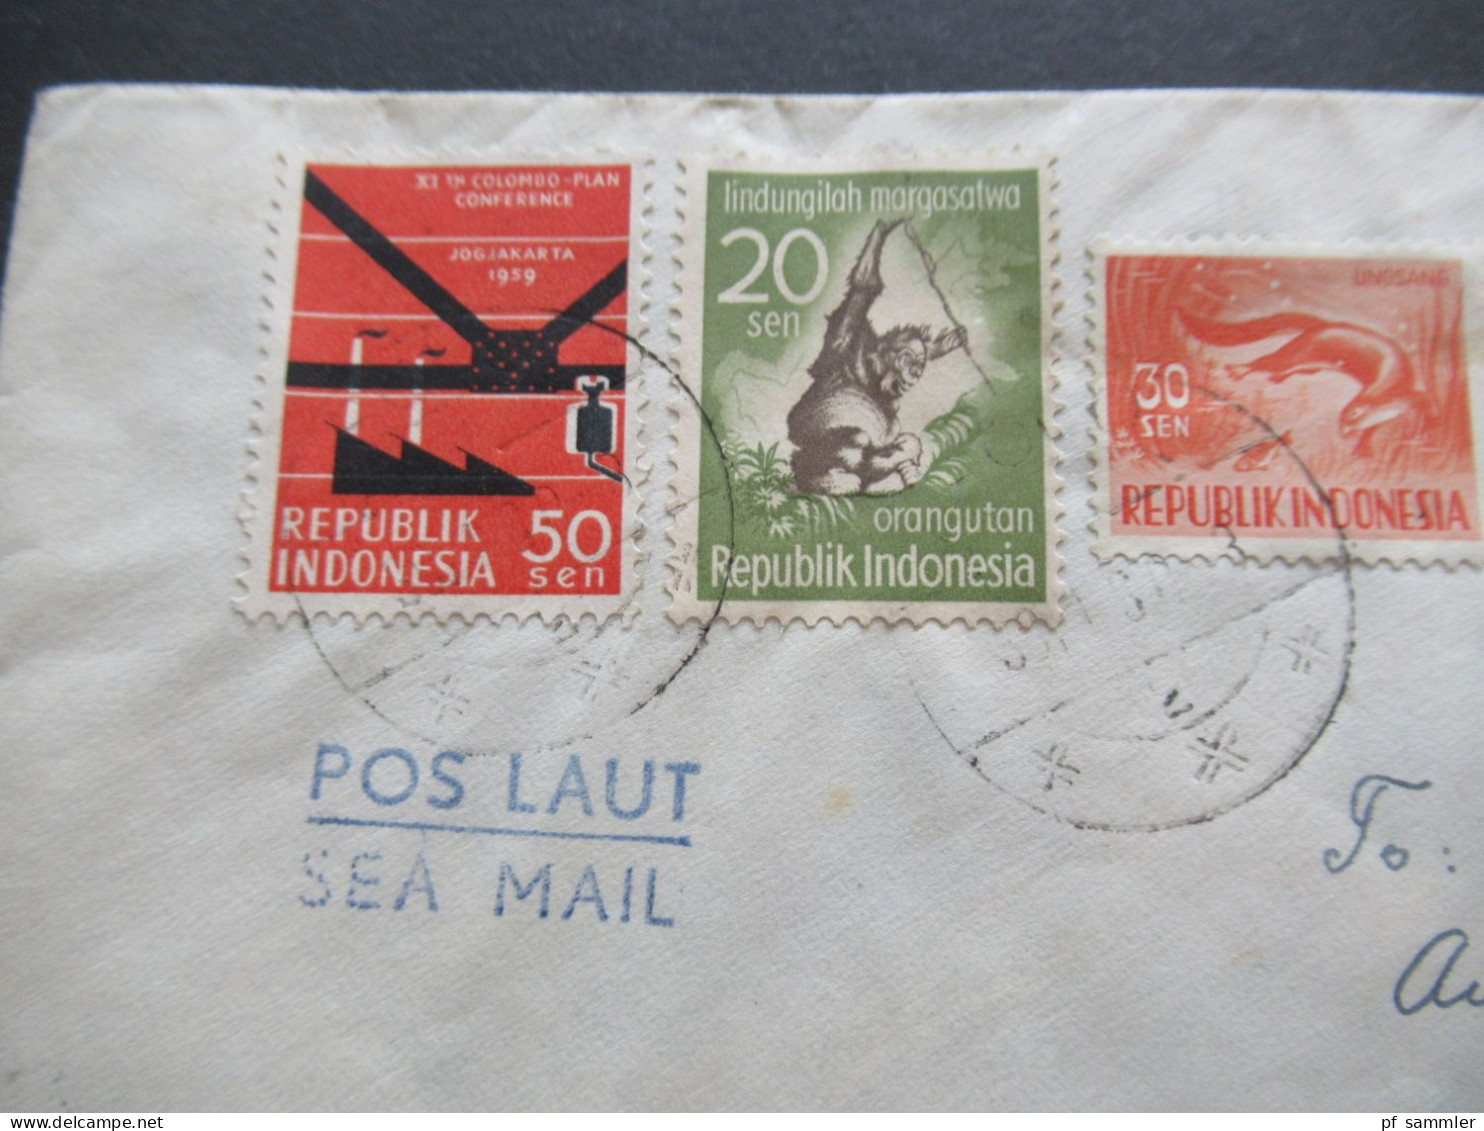 Asien Indonesien MiF Mit 5 Marken 1959 Java - CSR Stempel Pos Laut Sea Mail / Schiffspost / Übersee - Indonesien